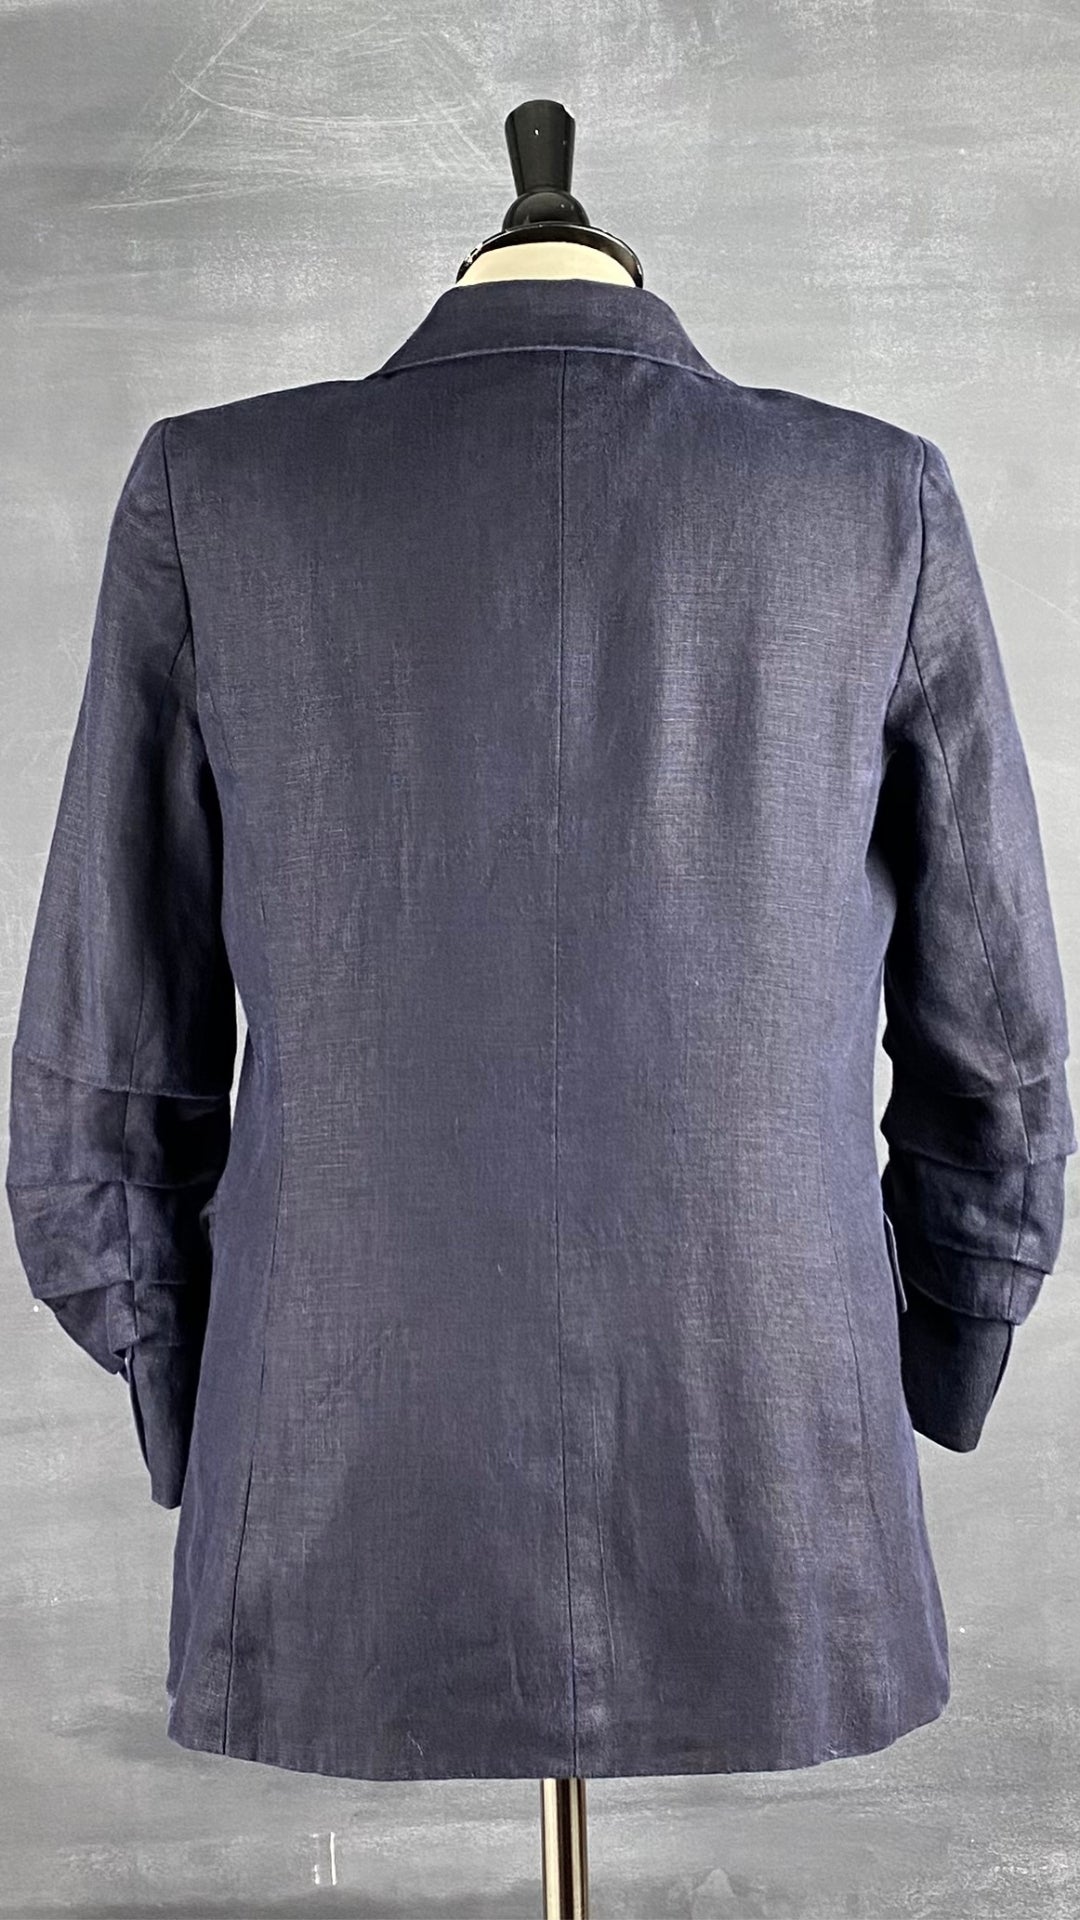 Veston estival parfait, ce blazer marine en lin Michael Kors est une base pour les températures chaudes. Vue de dos.